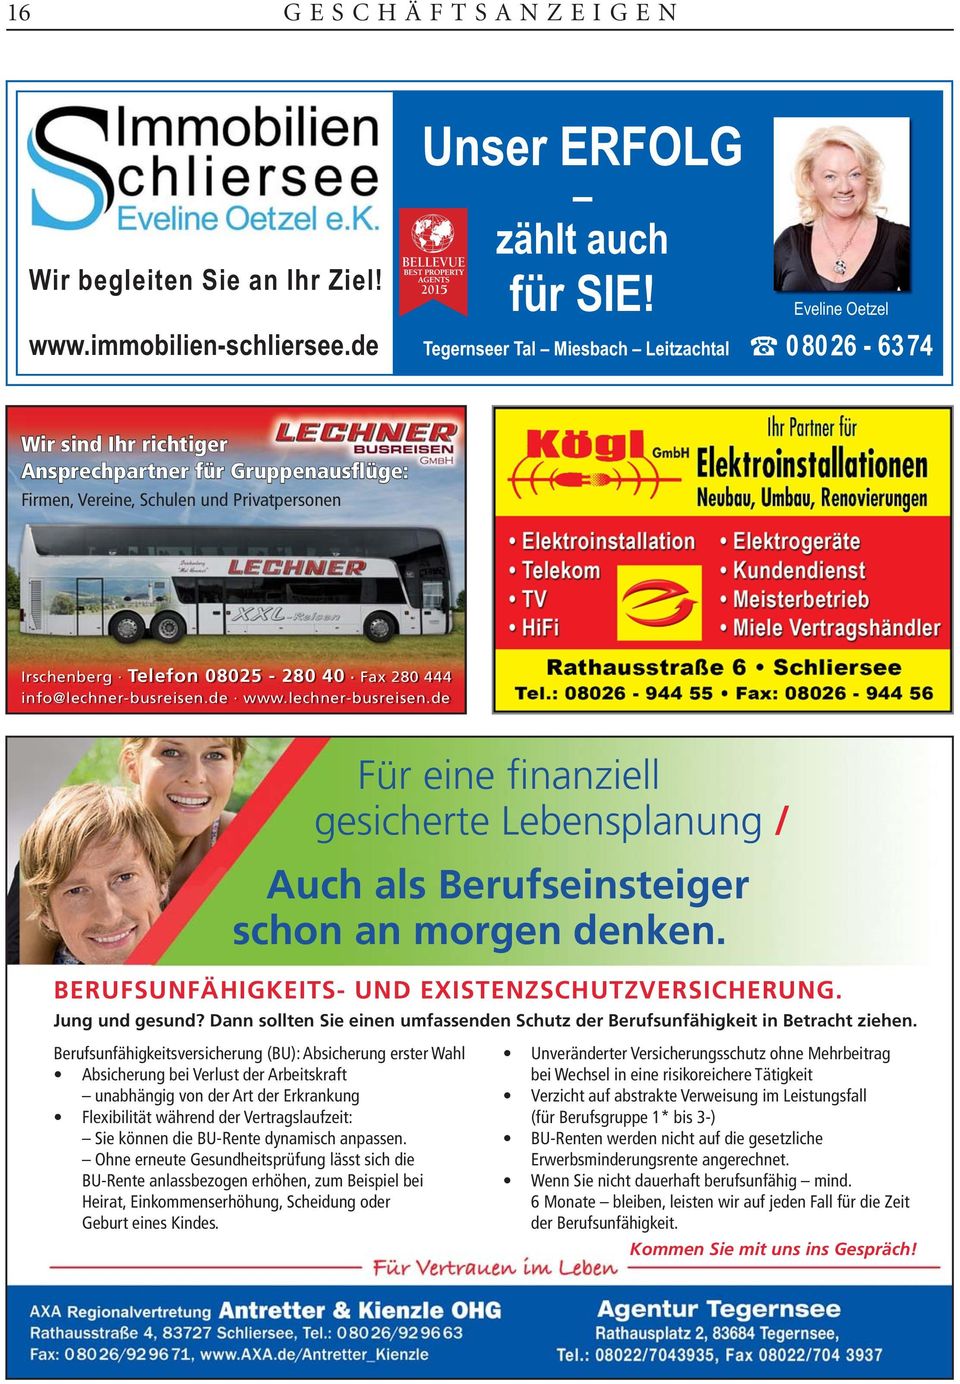 08025-280 40 Fax 280 444 info@lechner-busreisen.de www.lechner-busreisen.de Für eine finanziell gesicherte Lebensplanung / Auch als Berufseinsteiger schon an morgen denken.